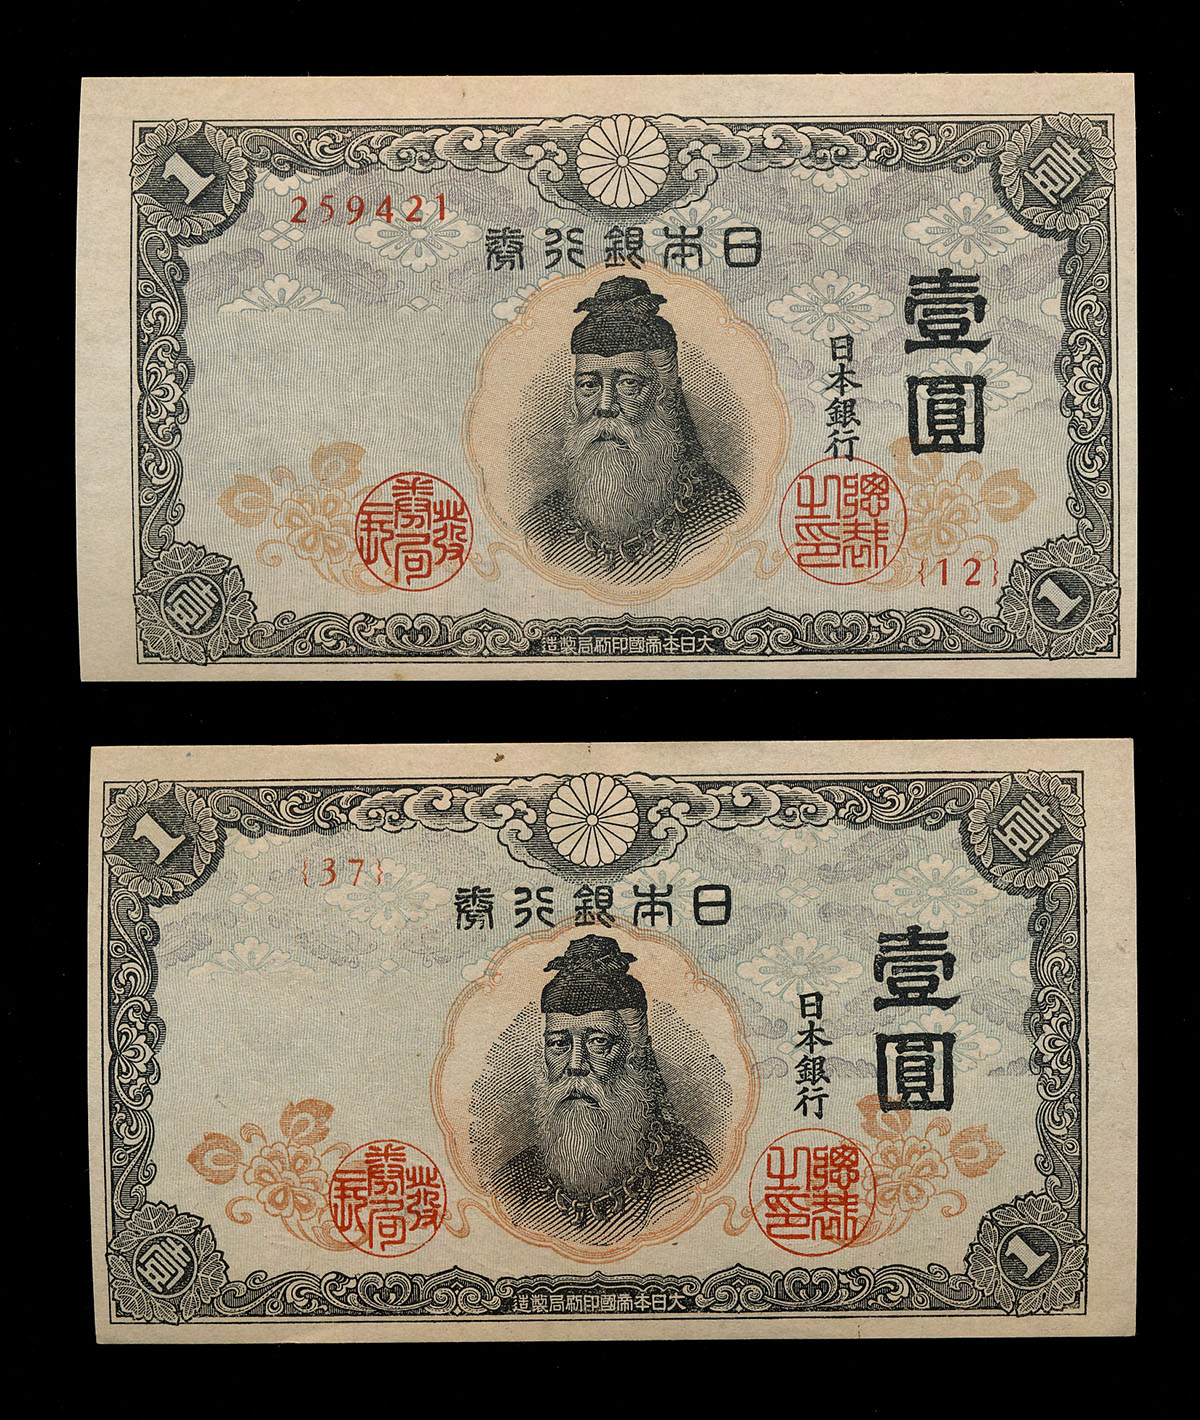 貨幣博物館 | 日本 中央武内1円札 2枚組 (UNC)未使用品